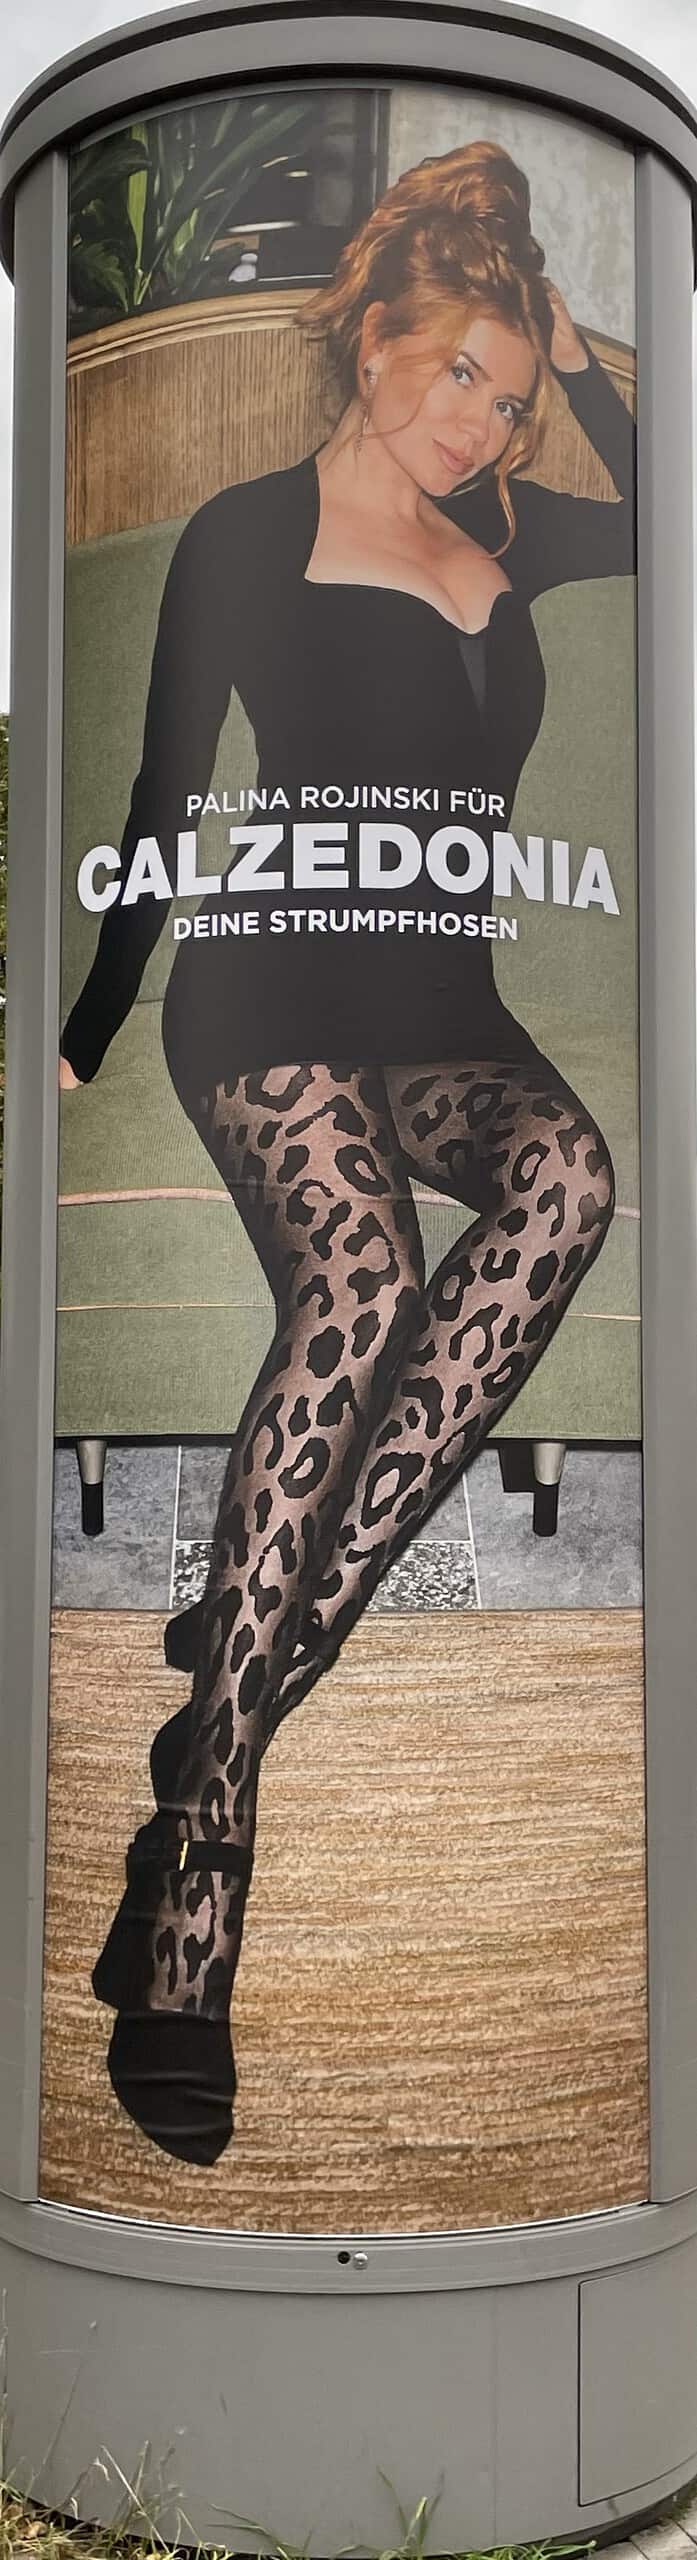 Auf der Litfaßsäule: Sexy Palina Rojinski in schwarzem, kurzem Kleid und böickdichter grauer Strumpfhiose mit schwarzem Raubkatzenmuster sowie schwarzen High Heels macht Calzedonia-Reklame.